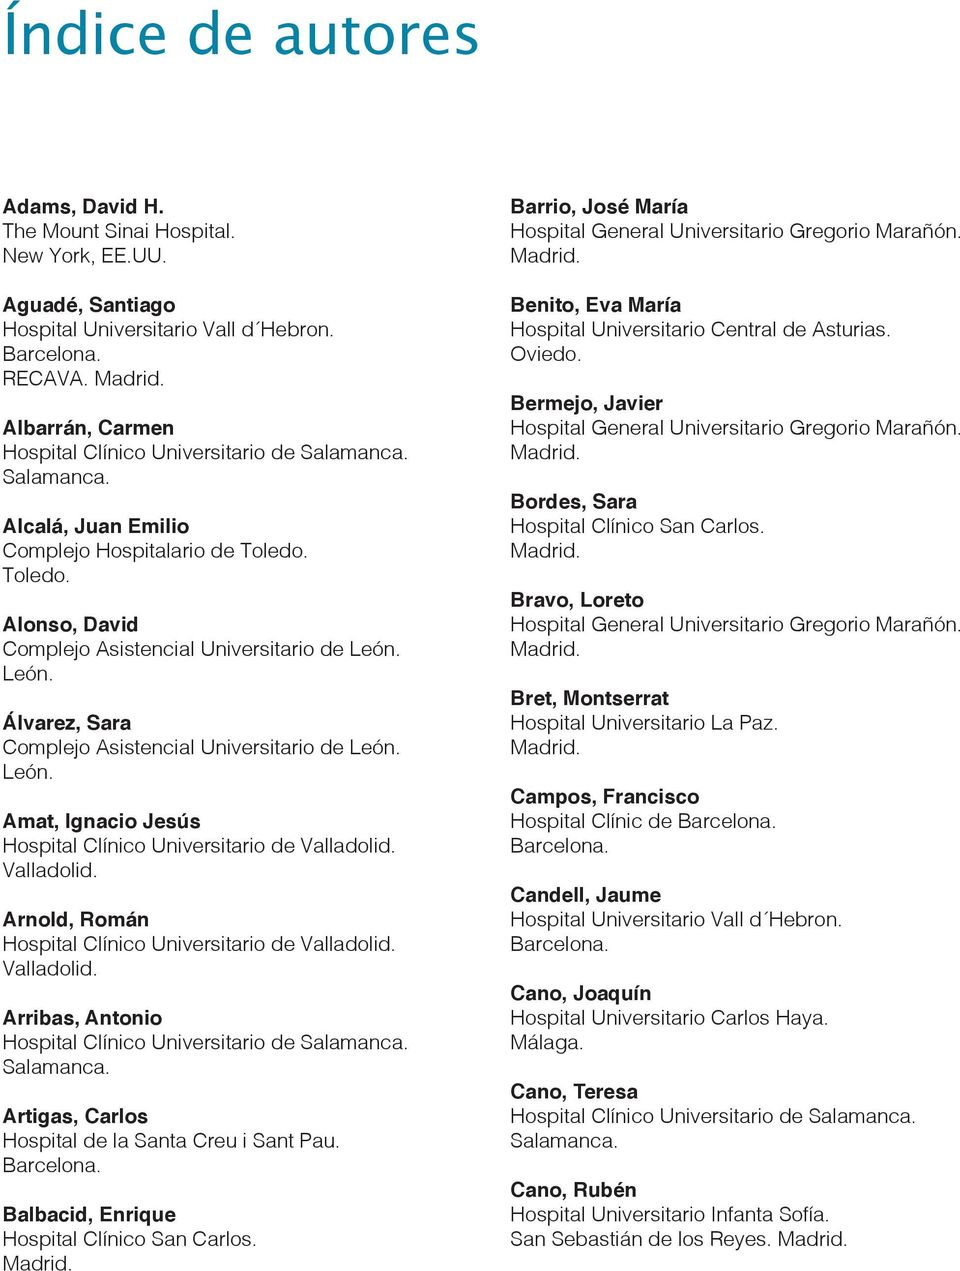 Ignacio Jesús Arnold, Román Arribas, Antonio Artigas, Carlos Balbacid, Enrique Barrio, José María Benito, Eva María Bermejo, Javier Bordes, Sara Bravo,